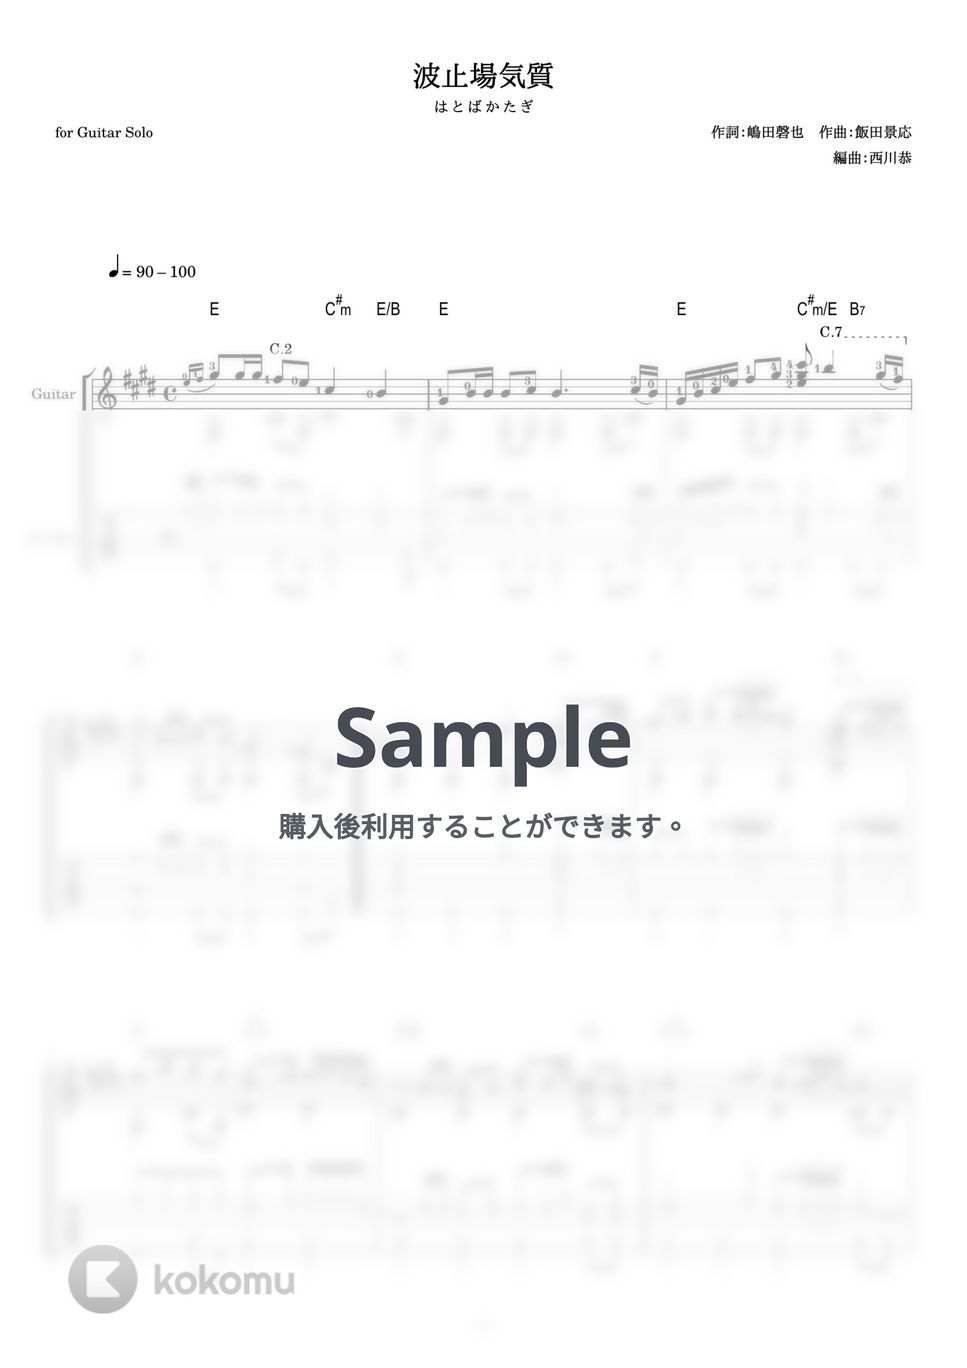 上原敏 - 波止場気質 (ギターソロ) by 西川恭